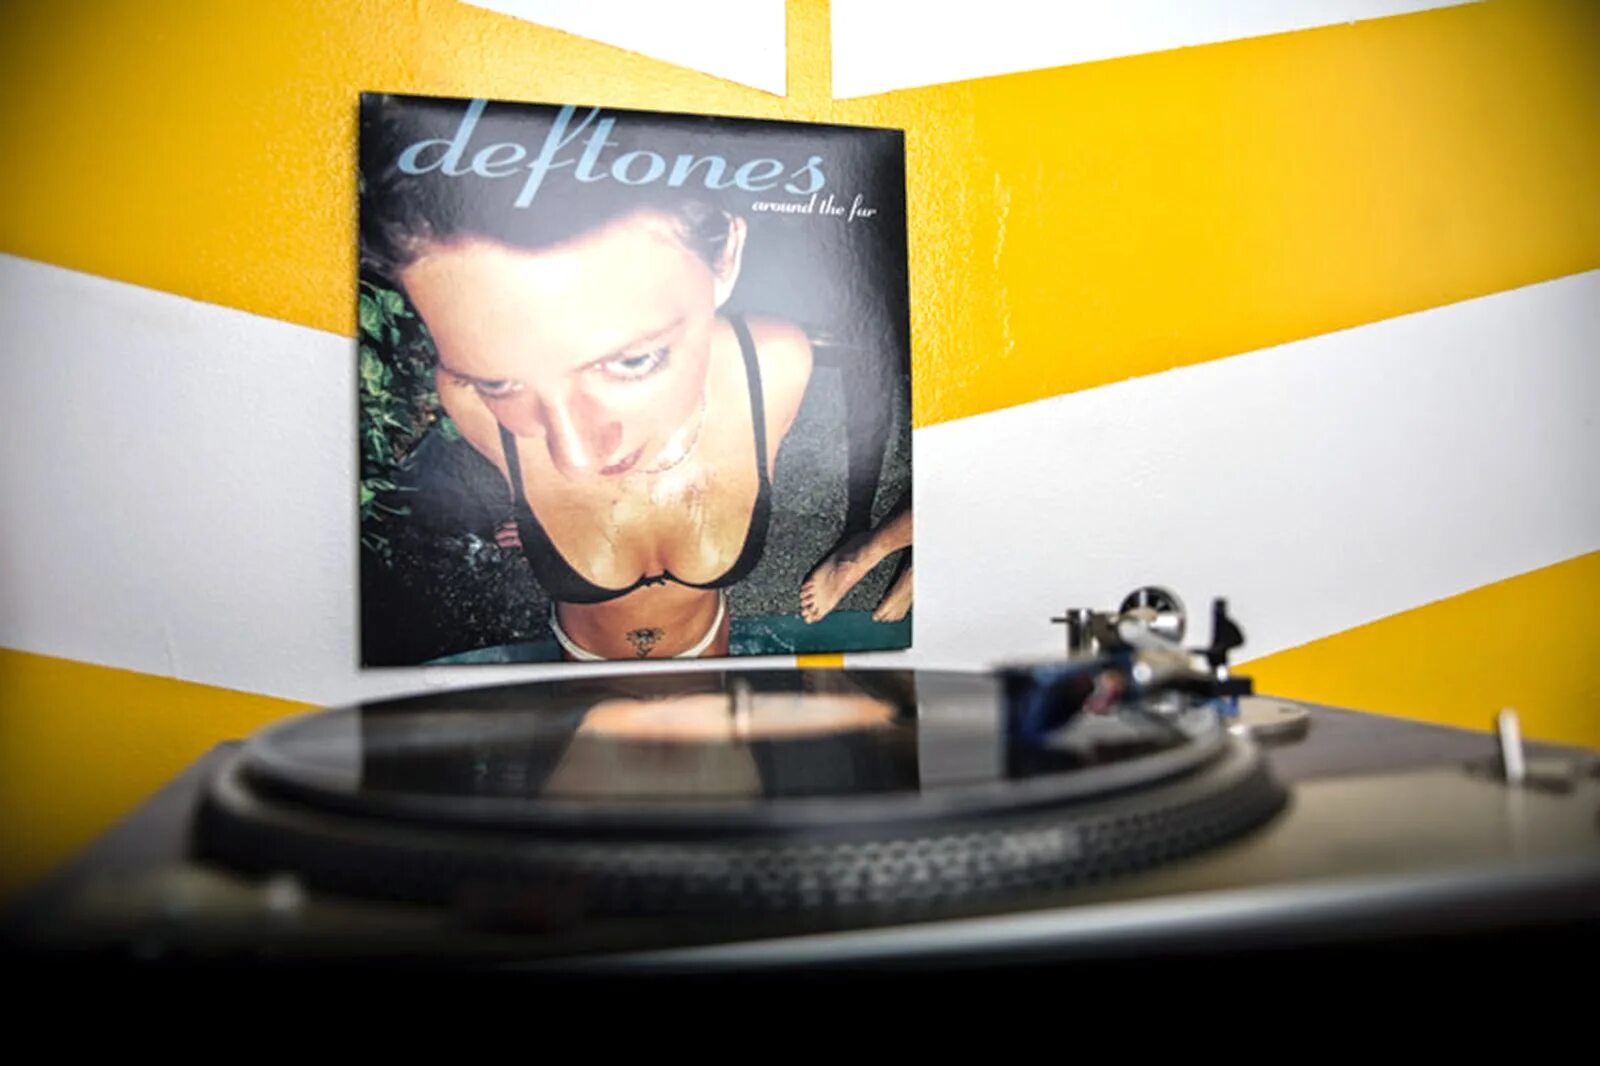 Deftones обложка девушка. Deftones around the fur 1997. Deftones around the fur обложка.